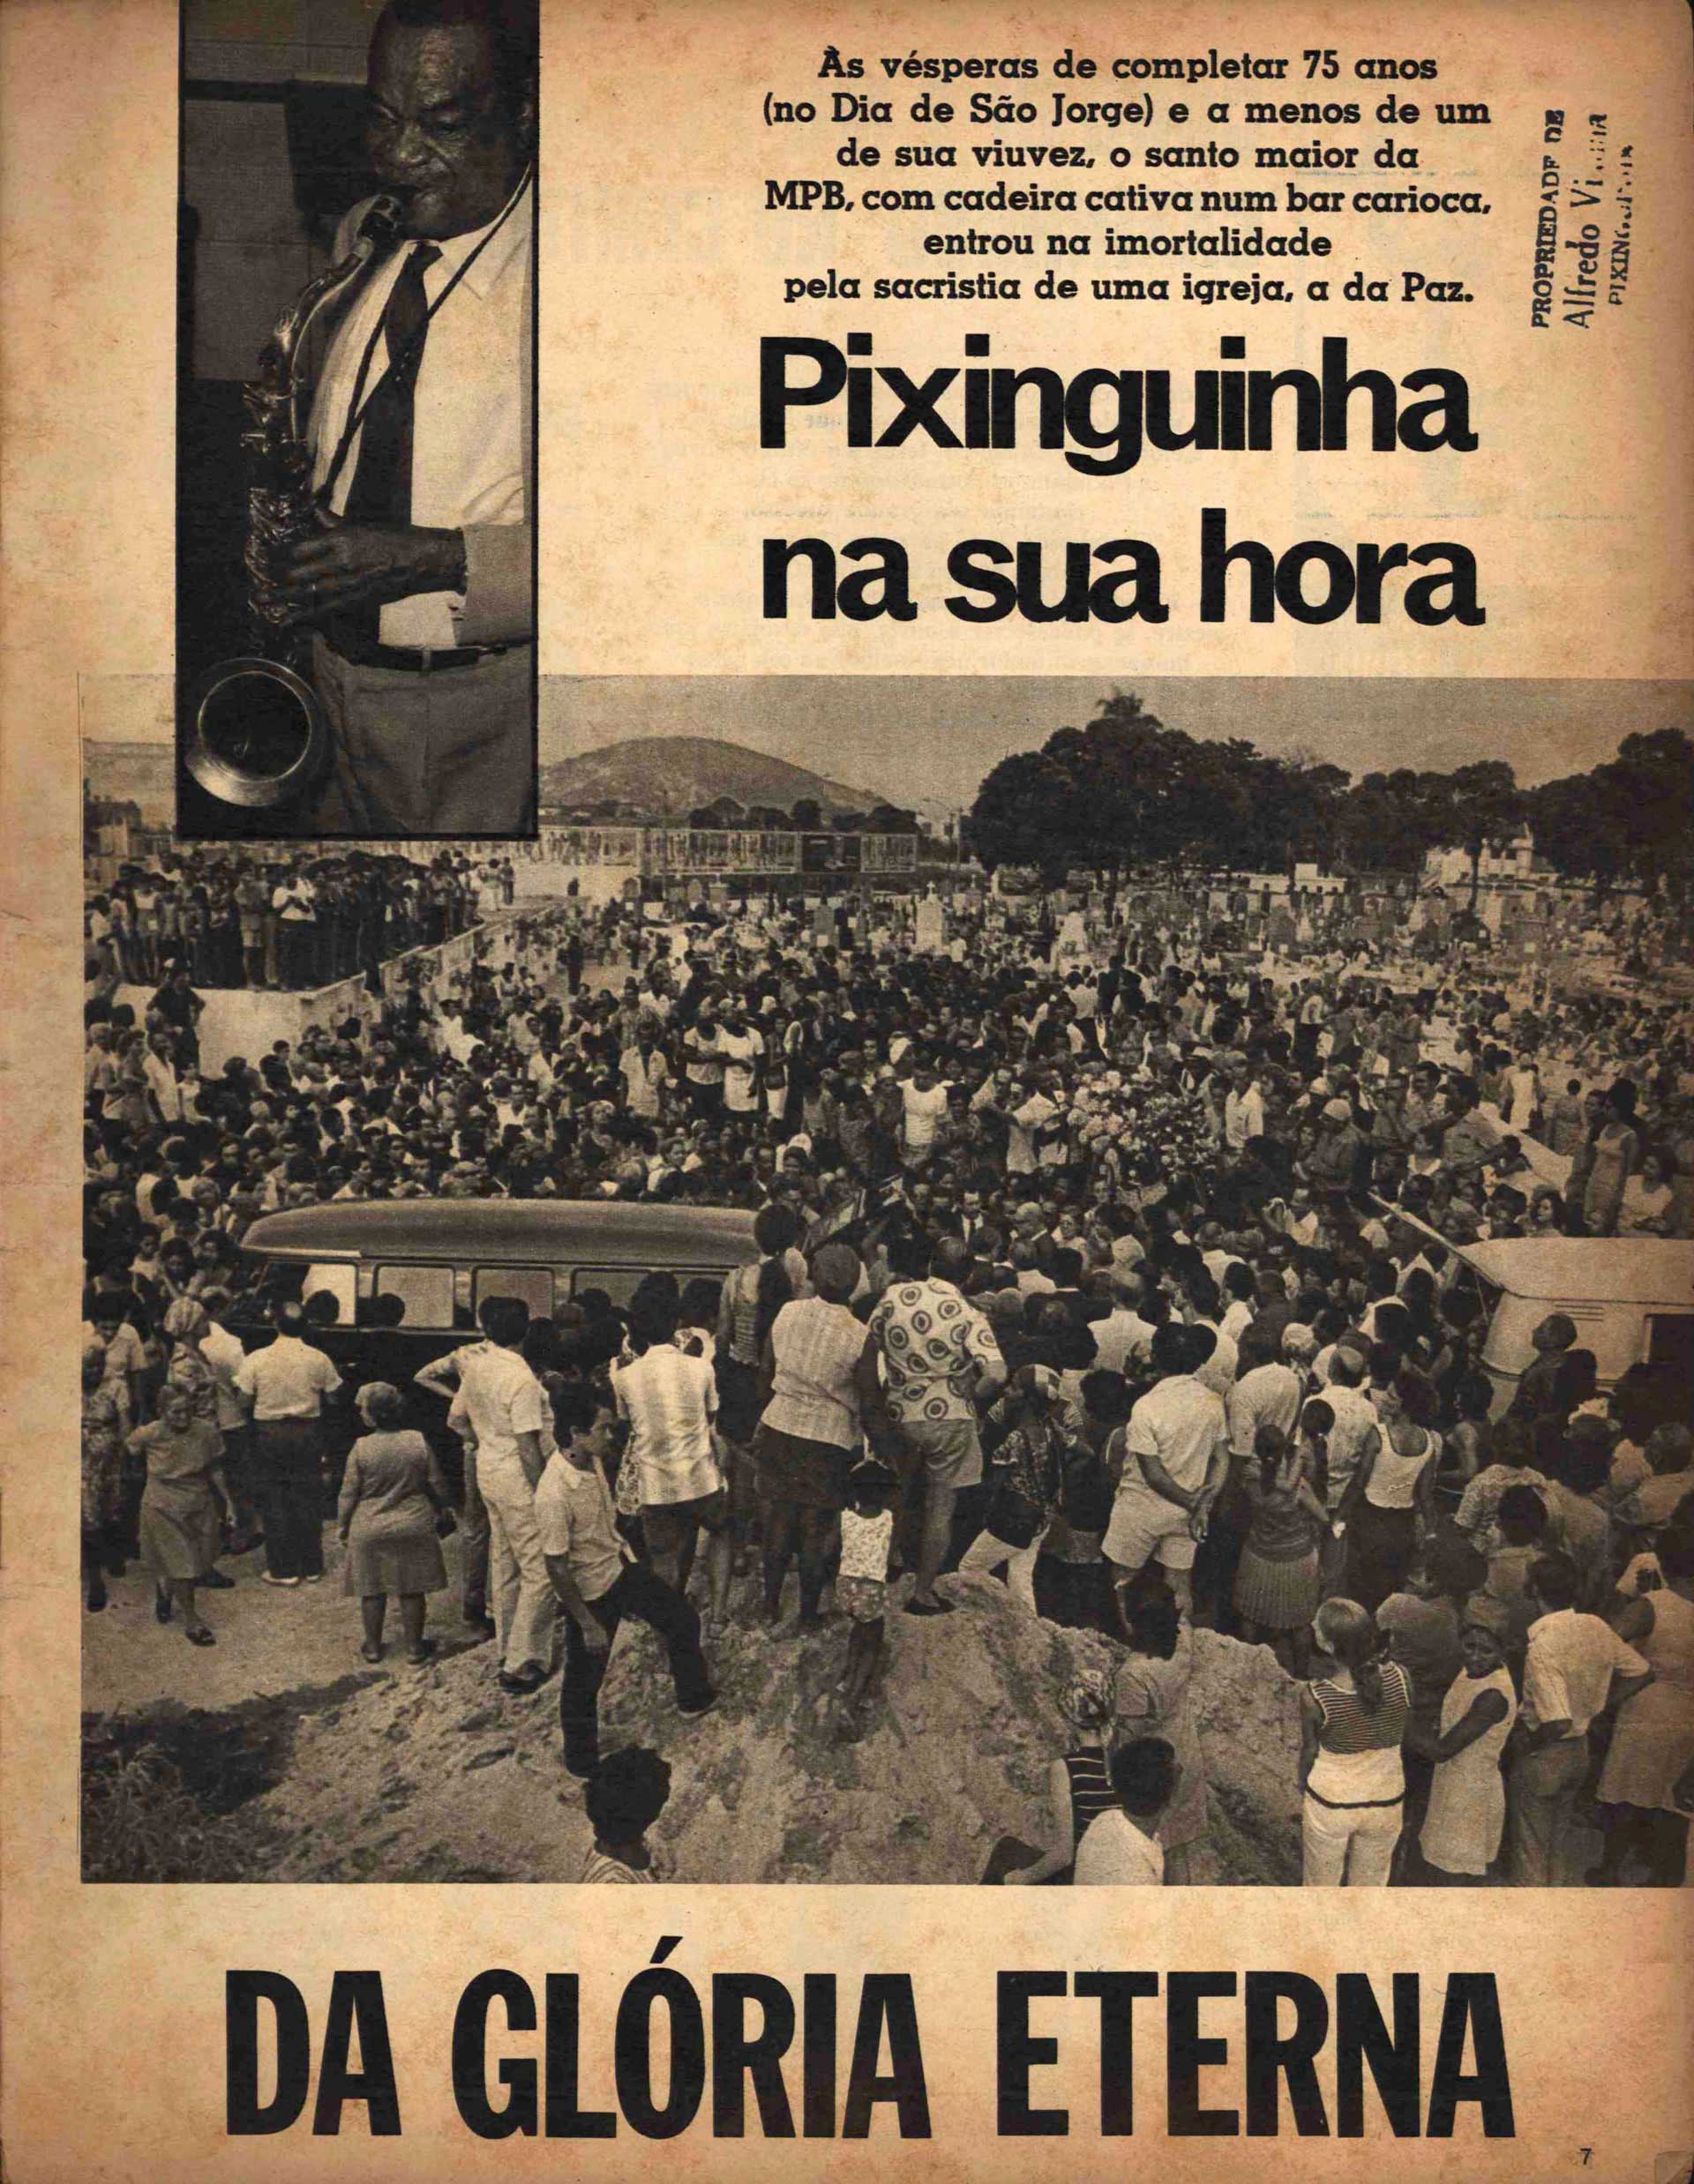 Cemitério de Inhaúma no dia do sepultamento de Pixinguinha. Revista “Cartaz”, 21/02/1973, pág. 7 (IMS_PIX_RevistaCartaz51p7 / Acervo Pixinguinha / IMS)